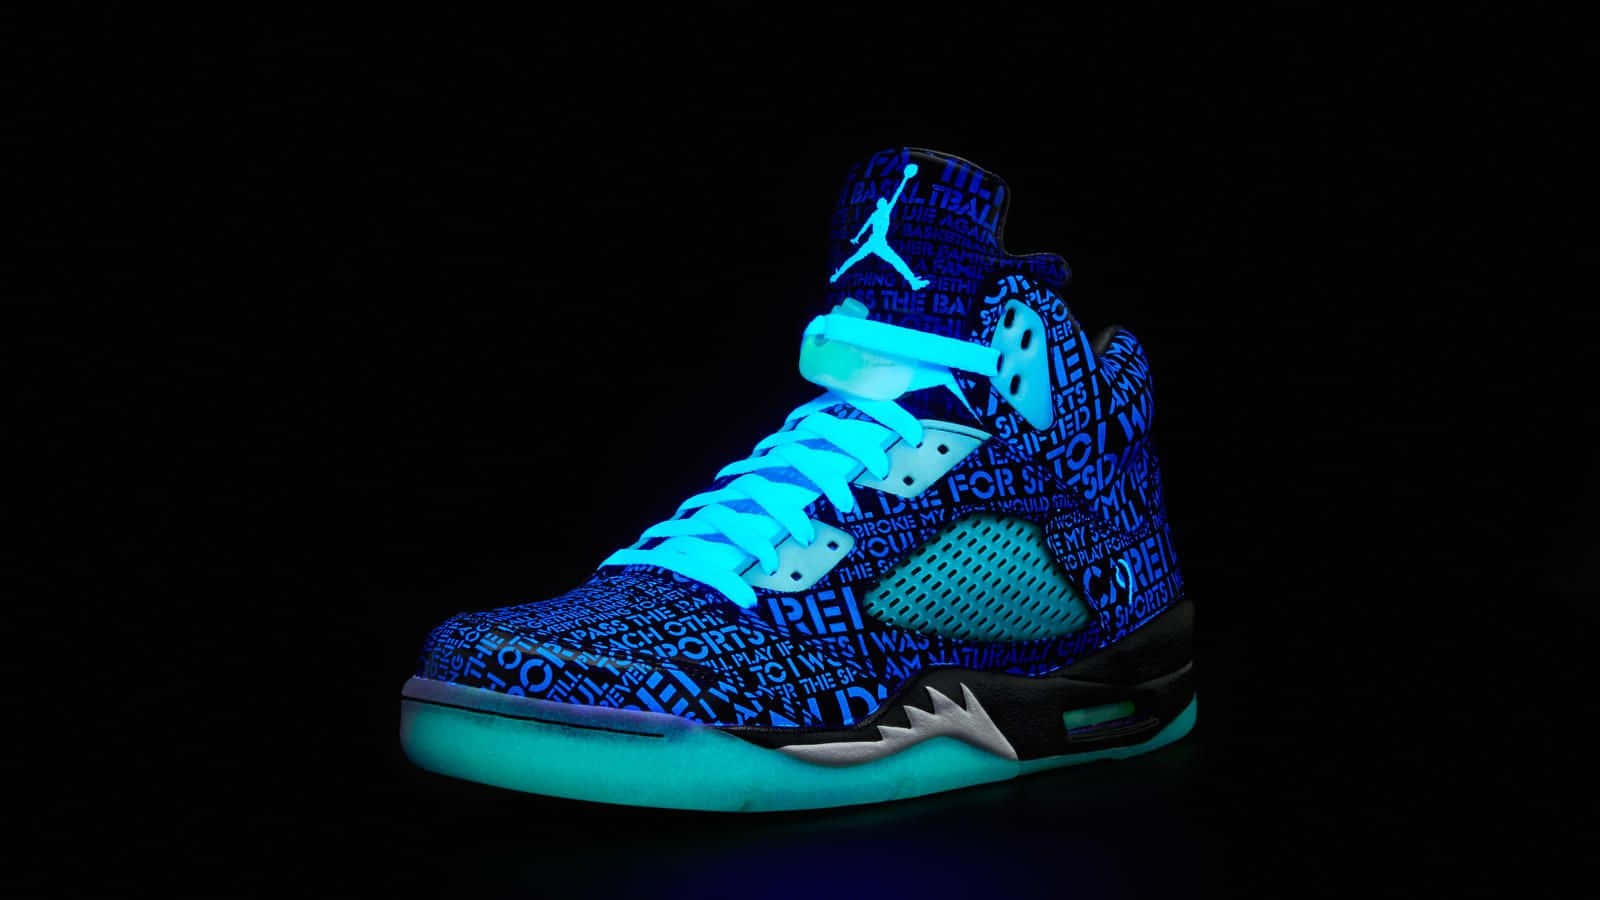 Glowing Blue Sneaker Showcase Wallpaper